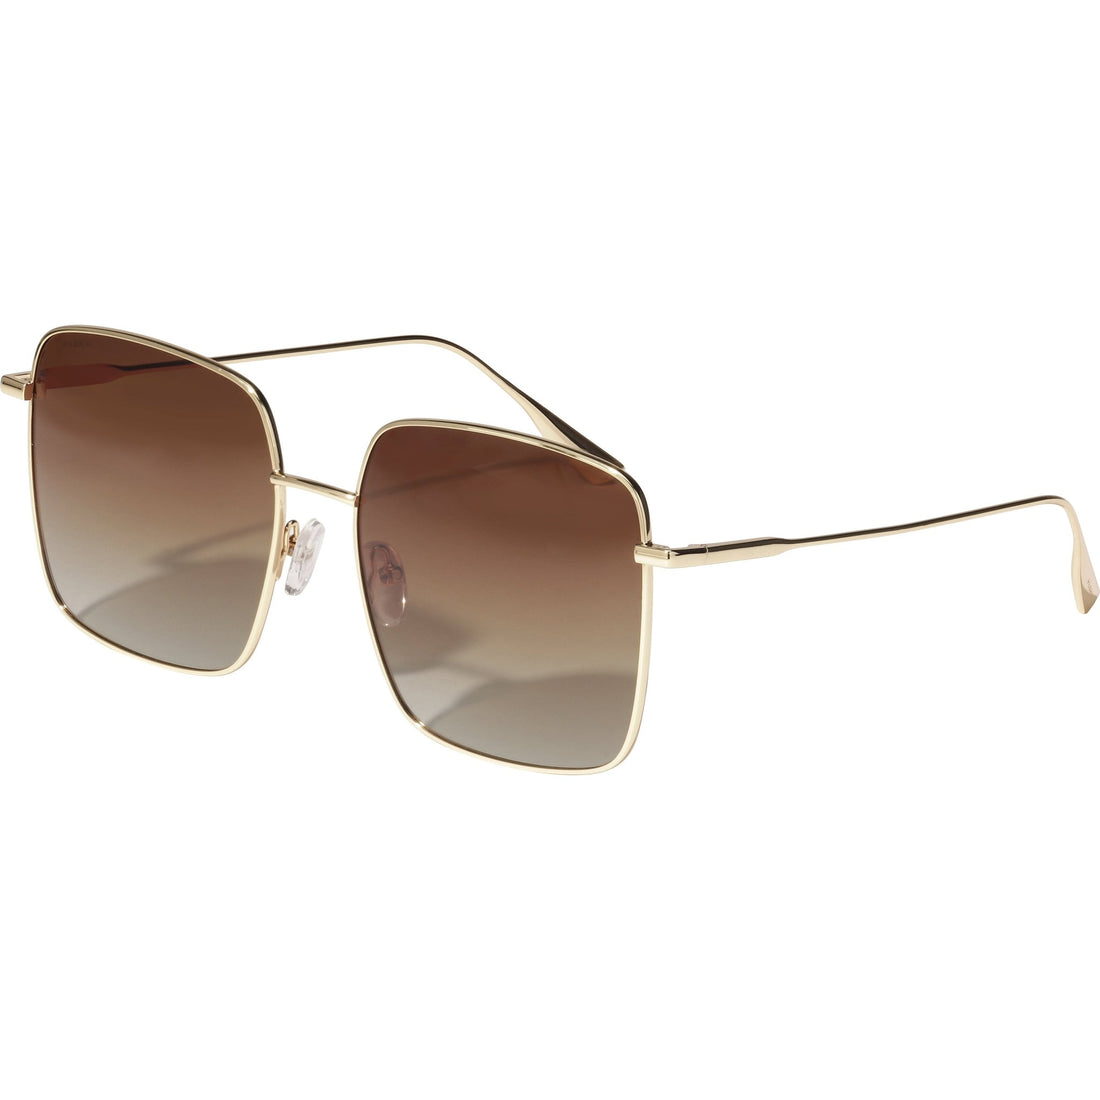 JONAN sunglasses brown/gold - PILGRIM